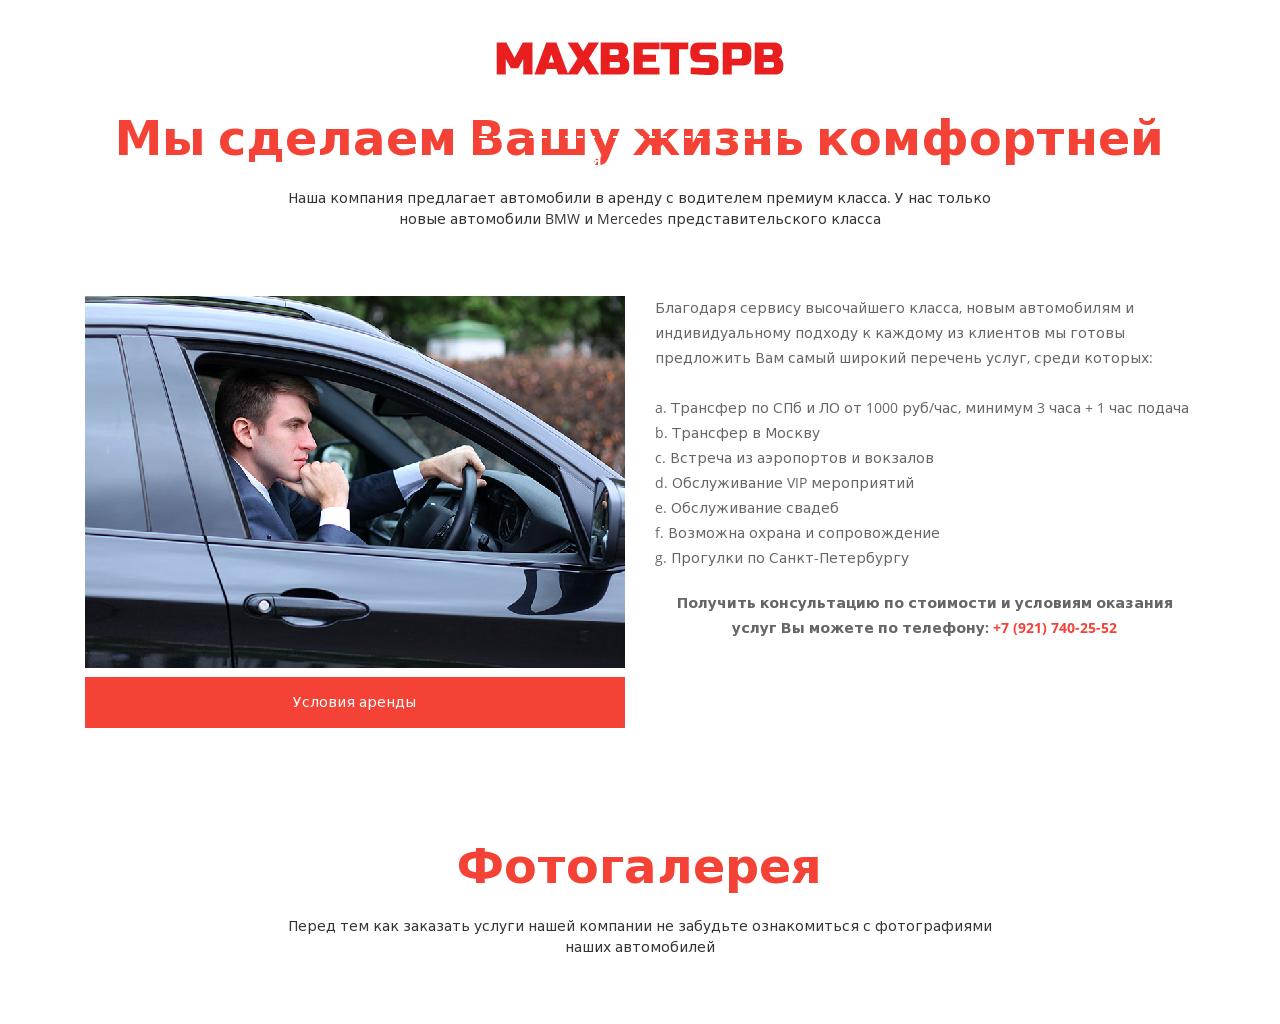 Изображение сайта maxbetspb.ru в разрешении 1280x1024